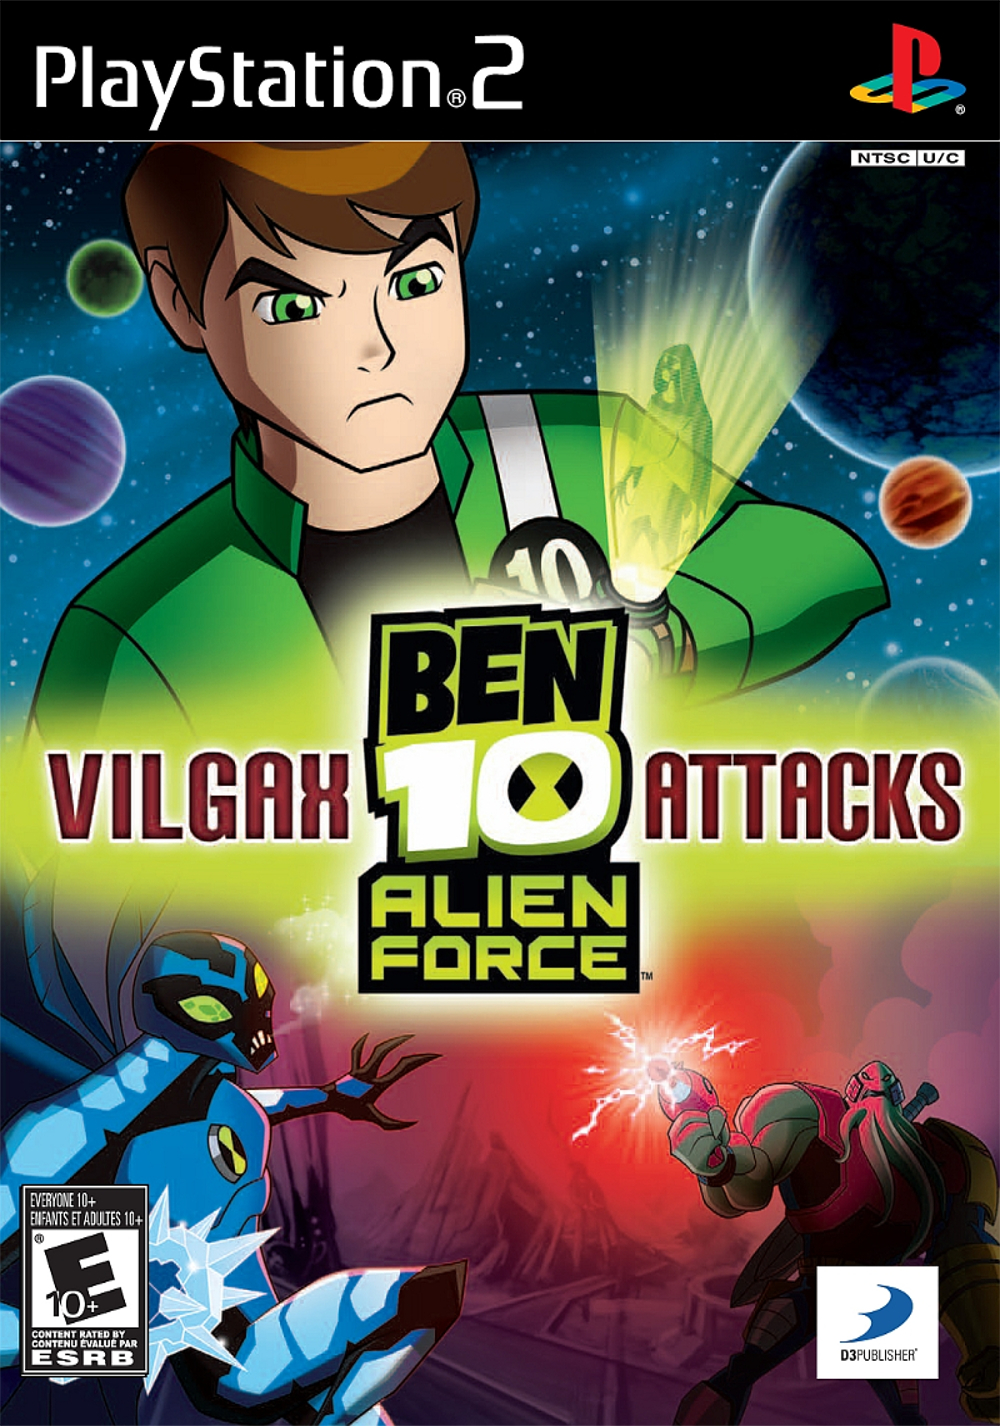 ben 10 alien force vilgax attacks ben 10 new series